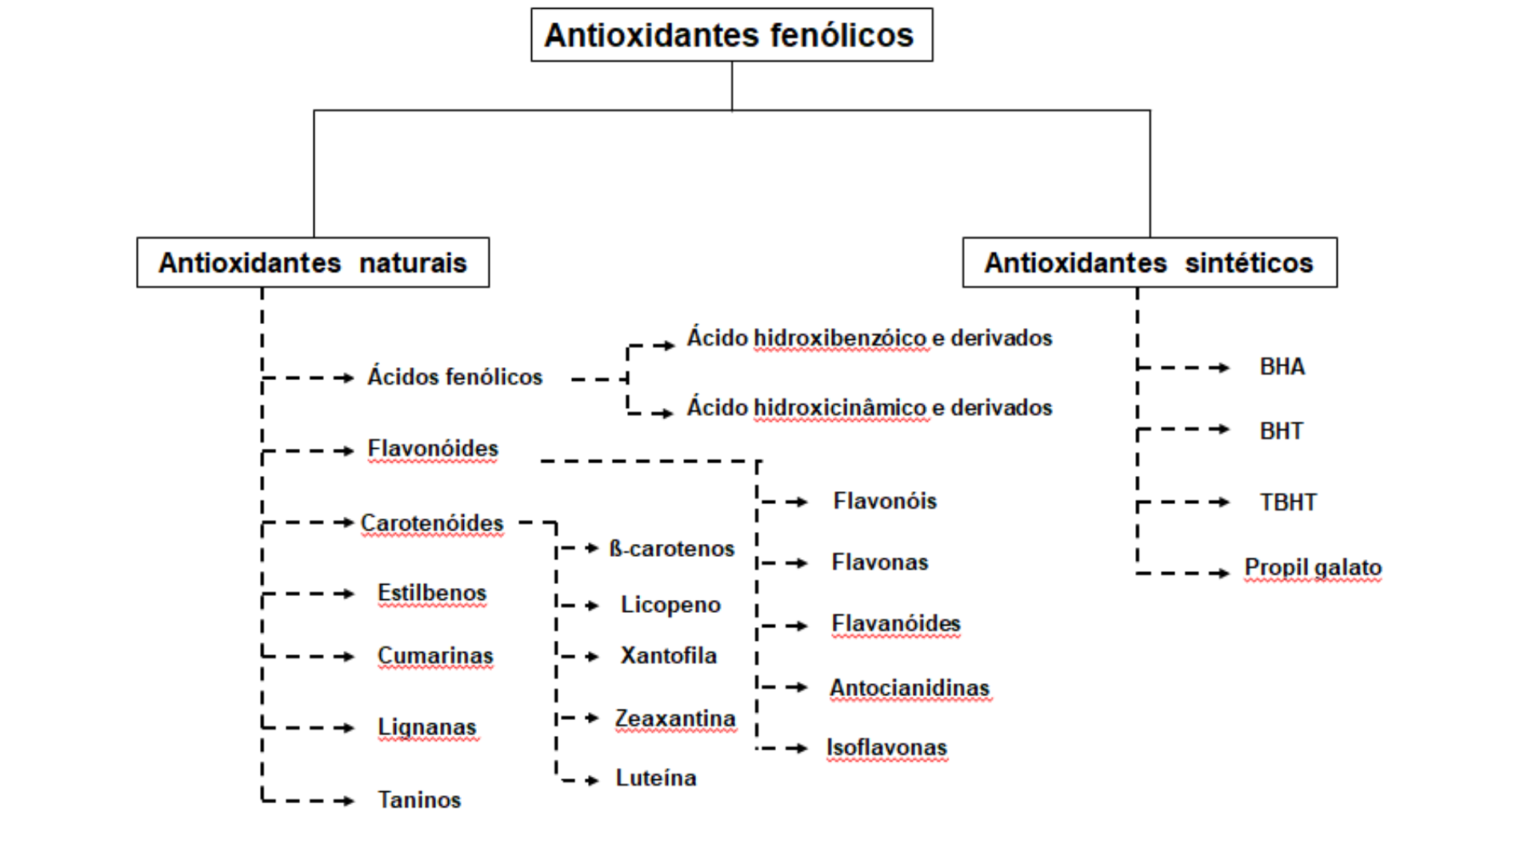 Distribuição dos principais antioxidantes fenólicos